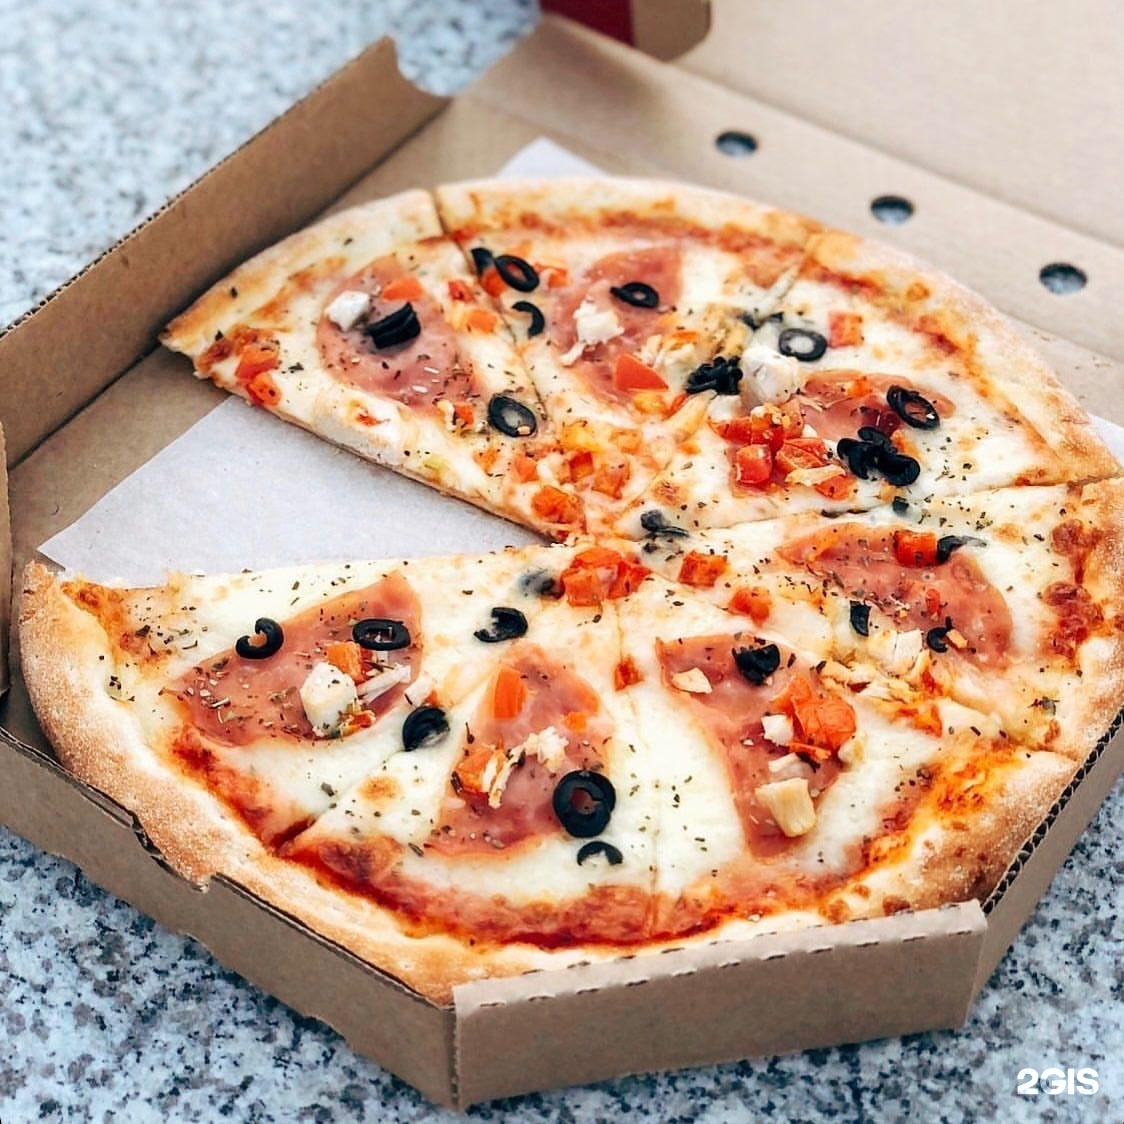 начинка на пиццу быстрое и вкусное фото 96